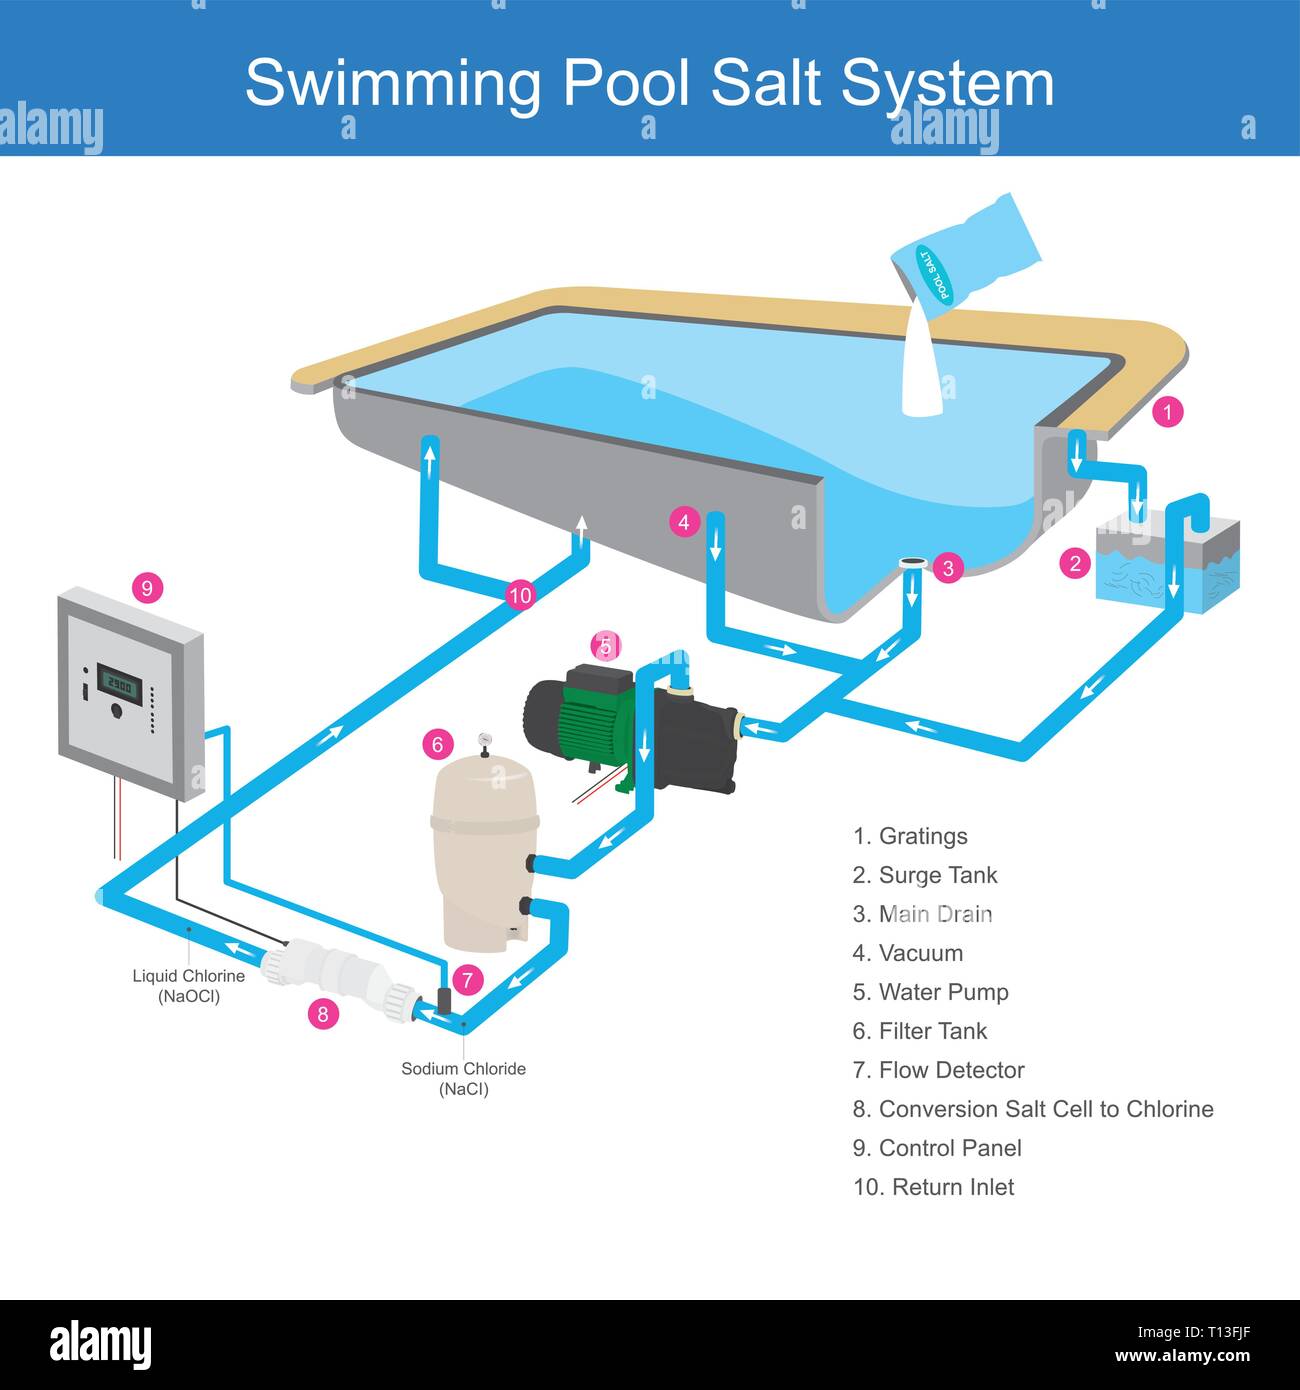 Il sistema di purificazione dell'acqua nella piscina che utilizza il sale è una sostanza chimica che rende l'acqua chiara, da utilizzare elettrodi cambio di cella per il cloro. Una infografica ho Illustrazione Vettoriale